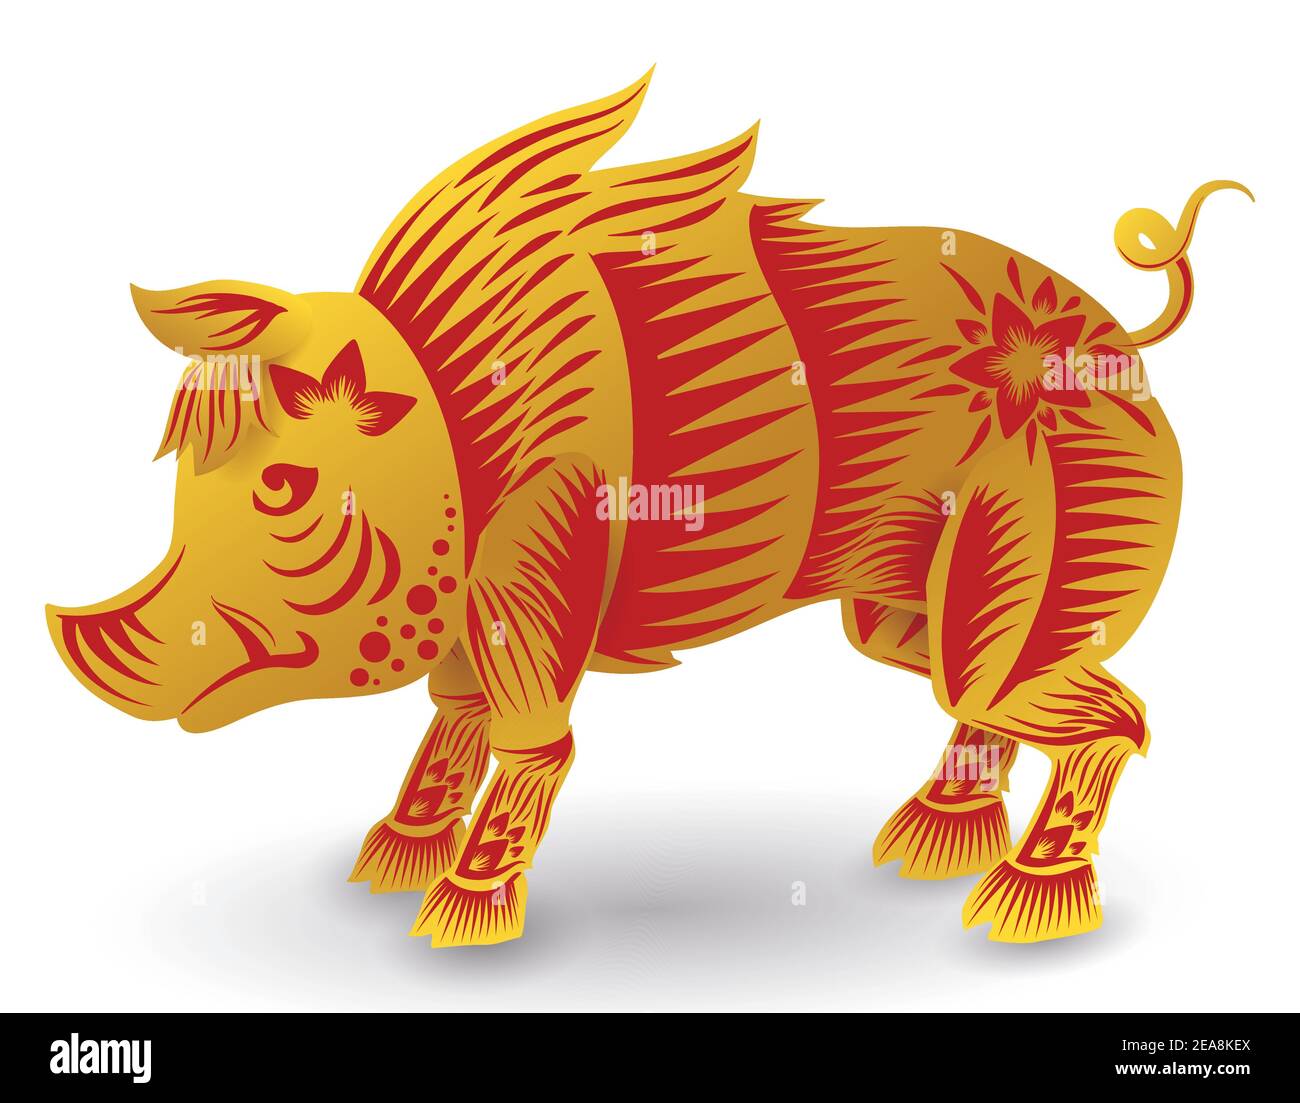 Tapferes Schwein oder Wildschwein des chinesischen Tierkreises mit heftigen Stoßzähnen in goldenen und roten Farben, isoliert auf weißem Hintergrund. Stock Vektor